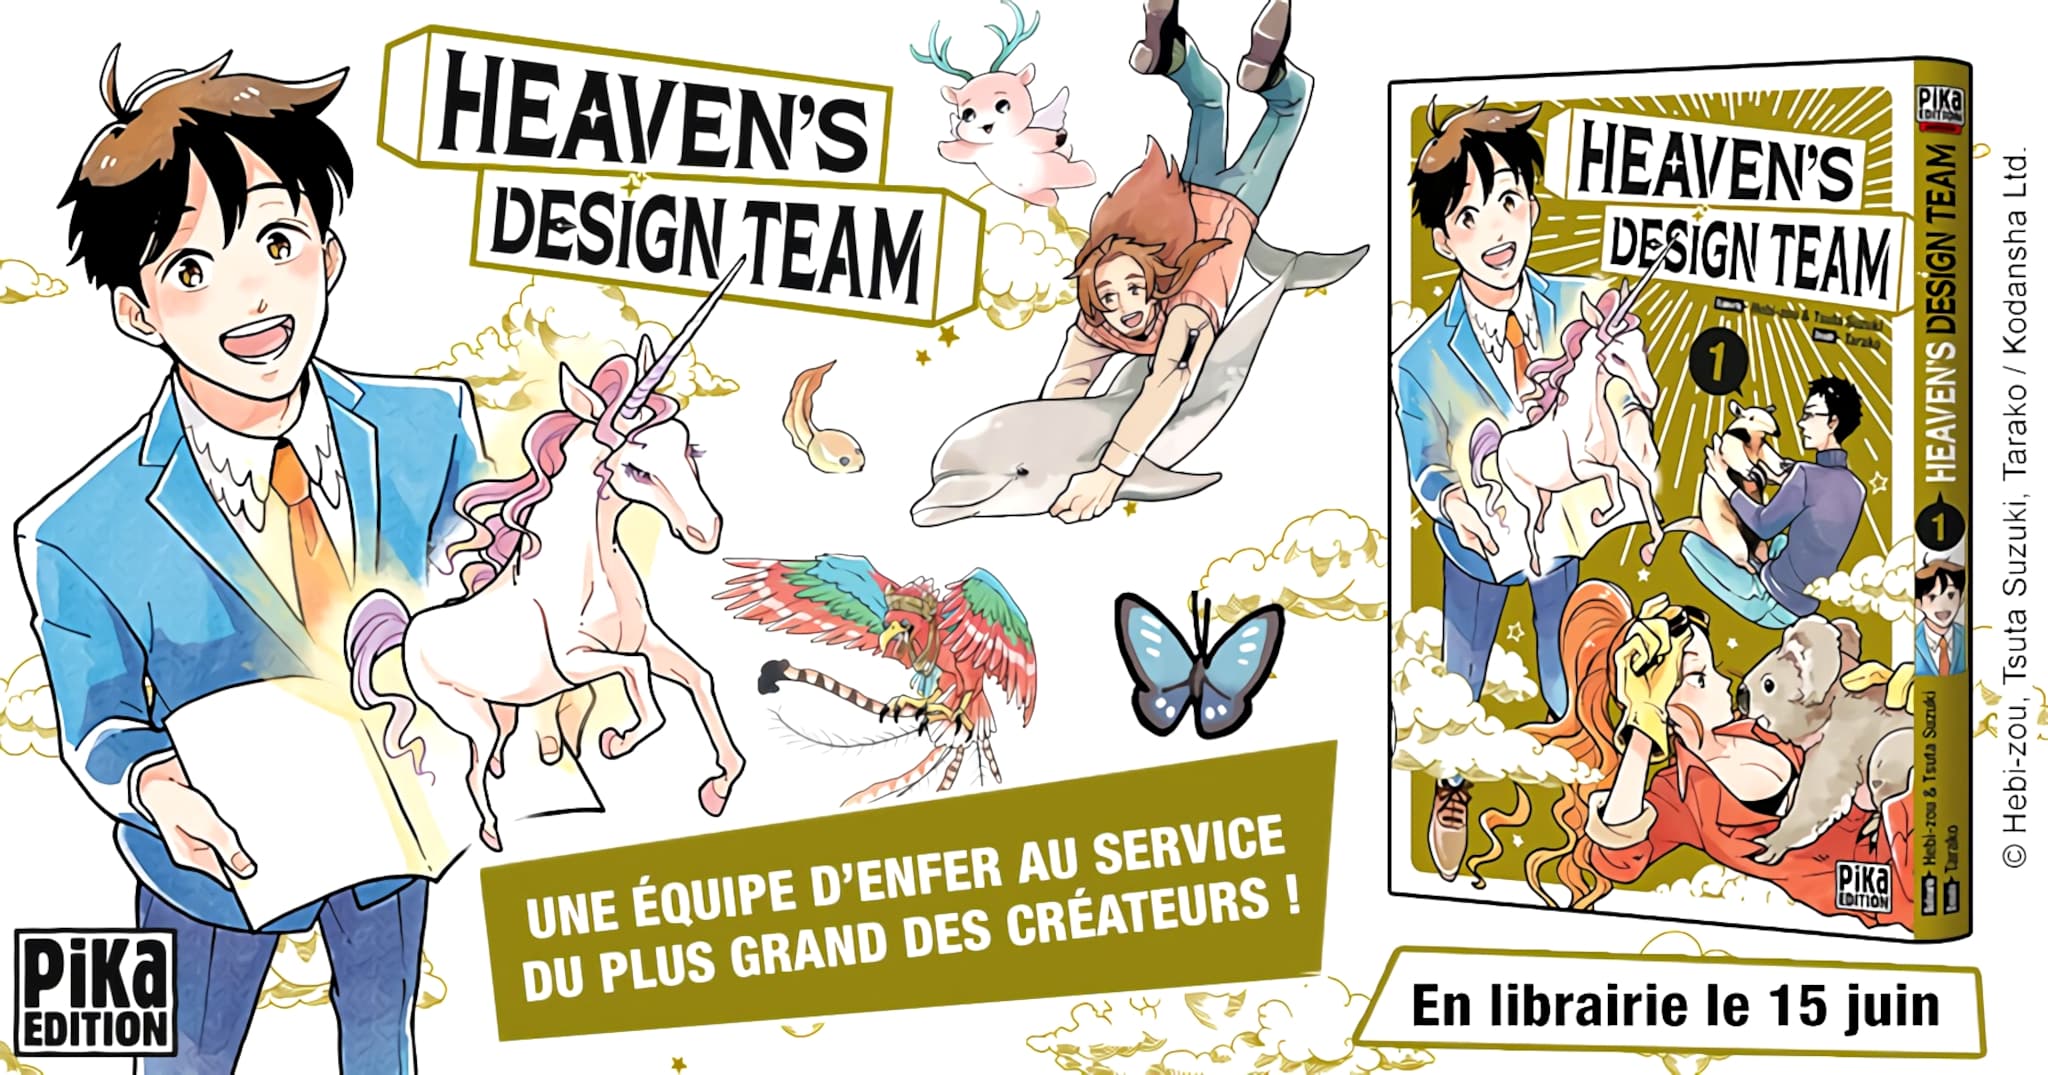 Annonce de la date de sortie du manga Heavens Design Team en France